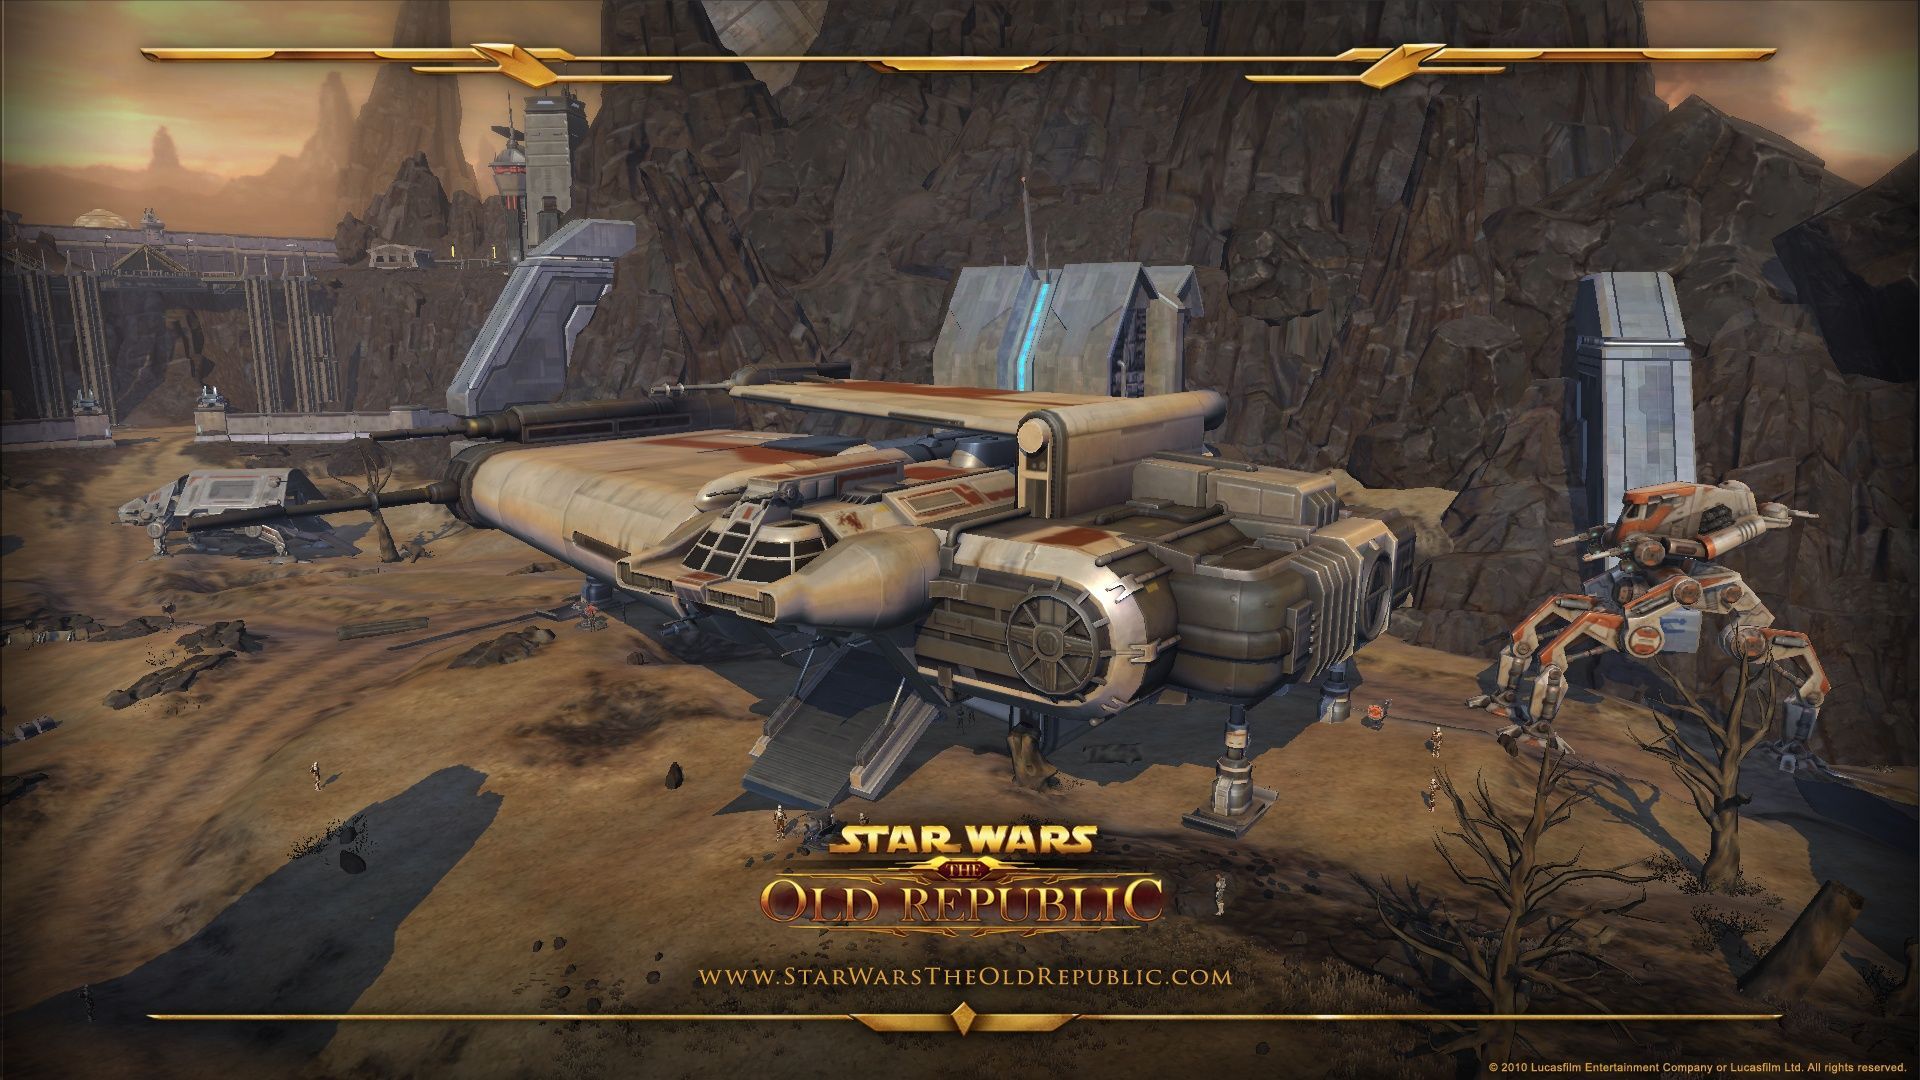 Star Wars- The Old Republic HD Wallpaper | 1920x1080 | ID:24195